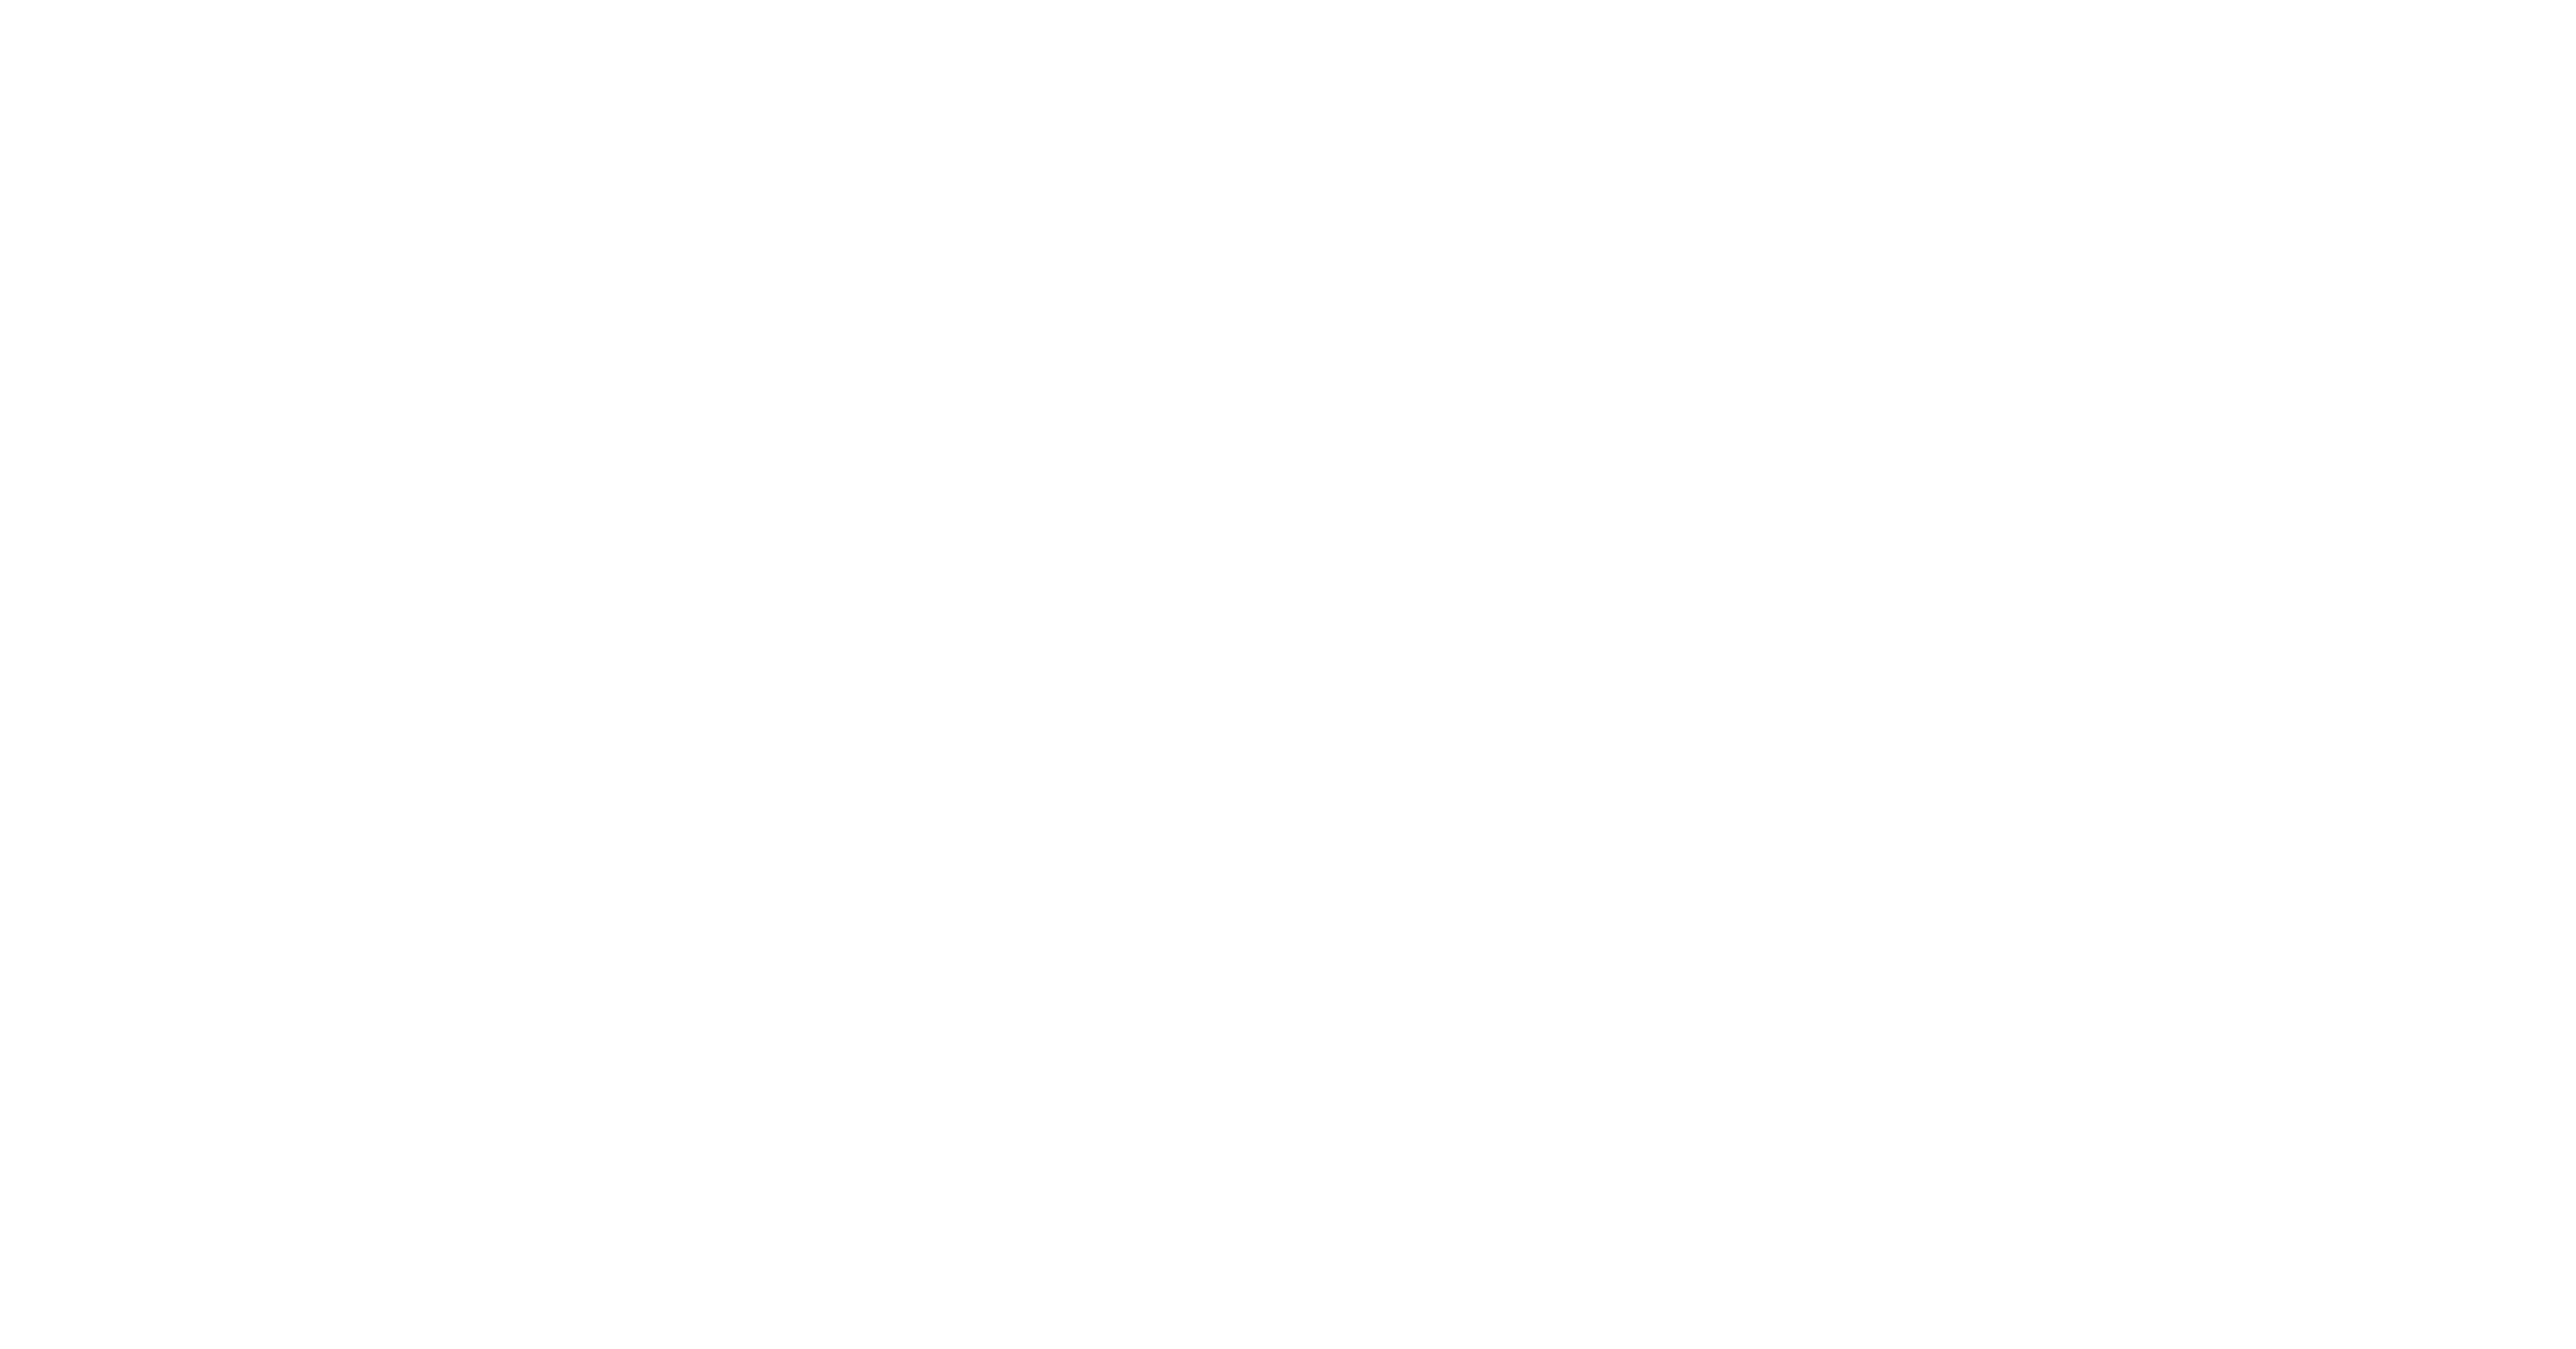 Hauler-Hero-Landscape-Logo-White-1